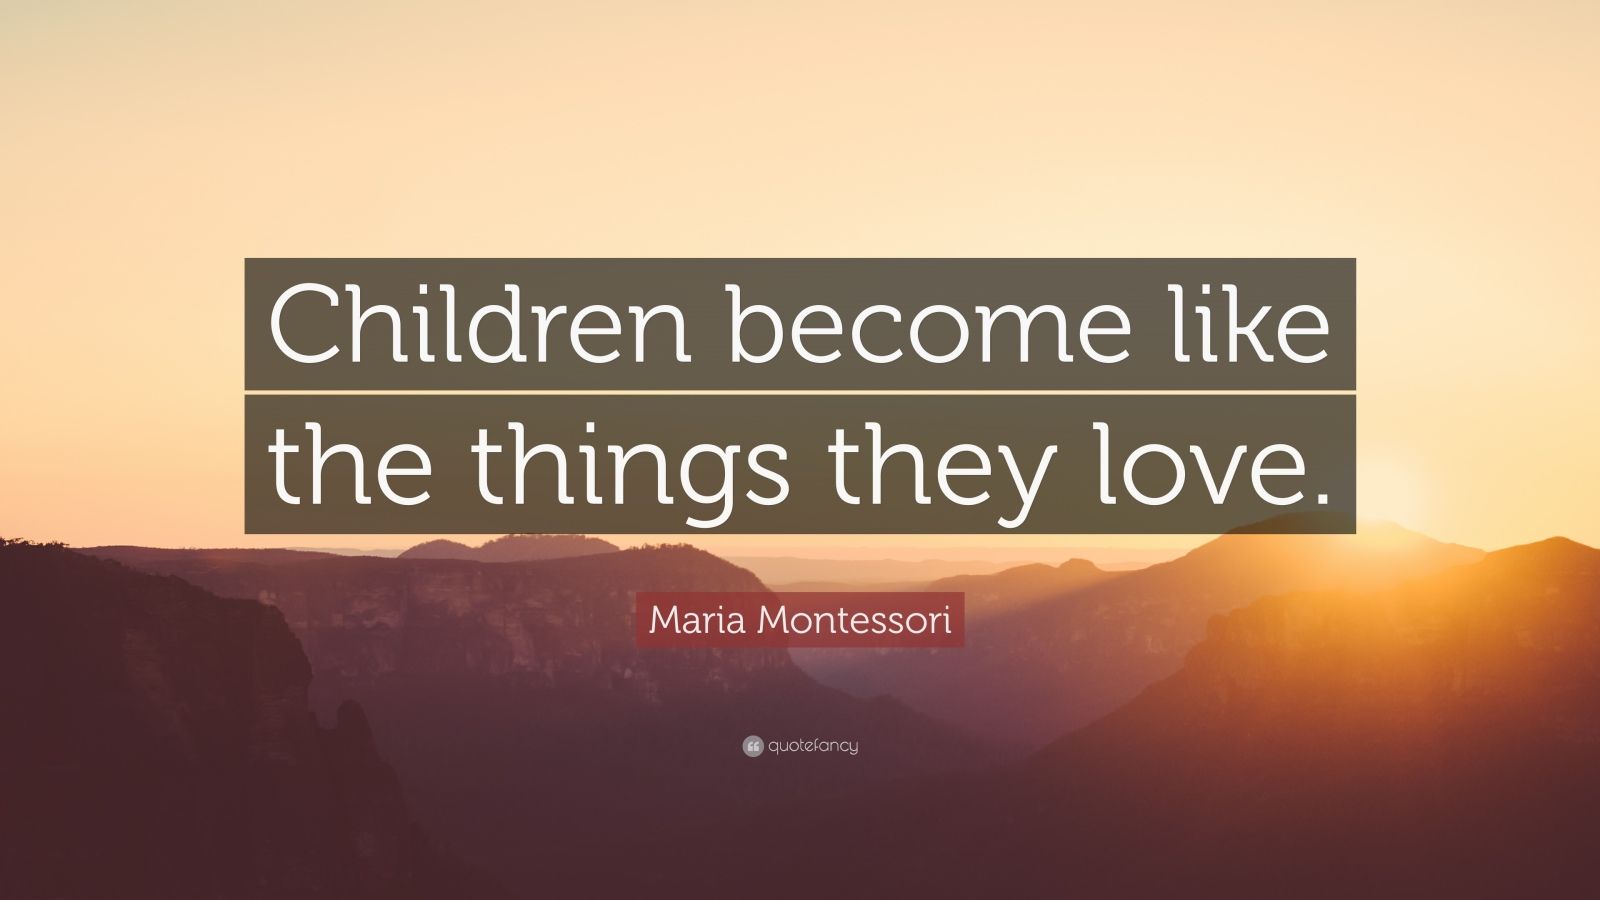 Top 250 Maria Montessori Quotes | 2021 Edition | Free Images - QuoteFancy